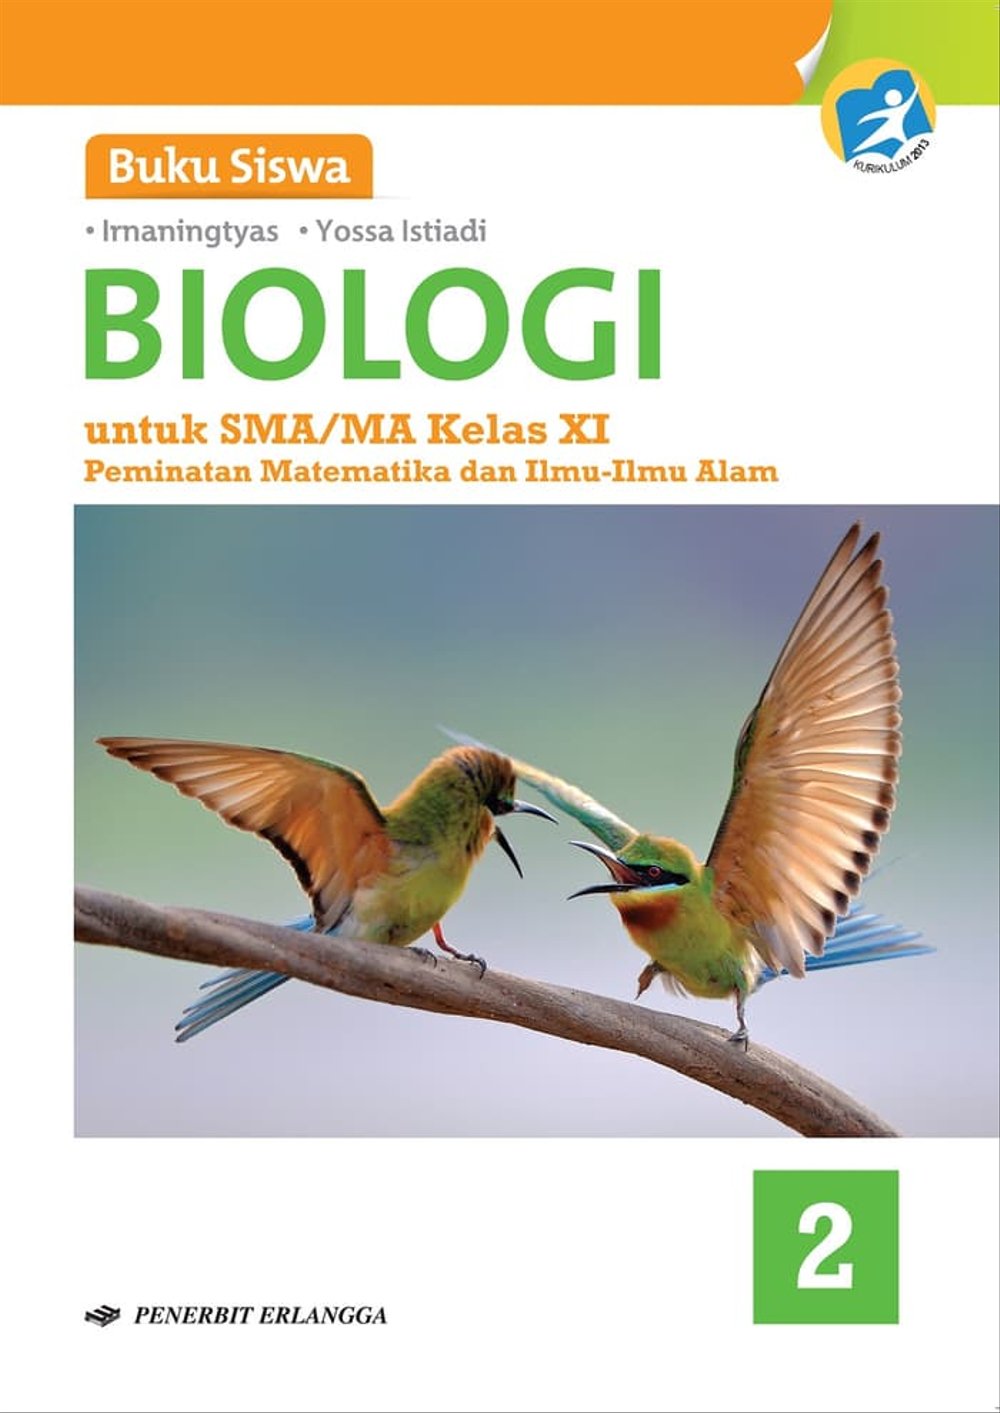 pdf biologi kelas 11